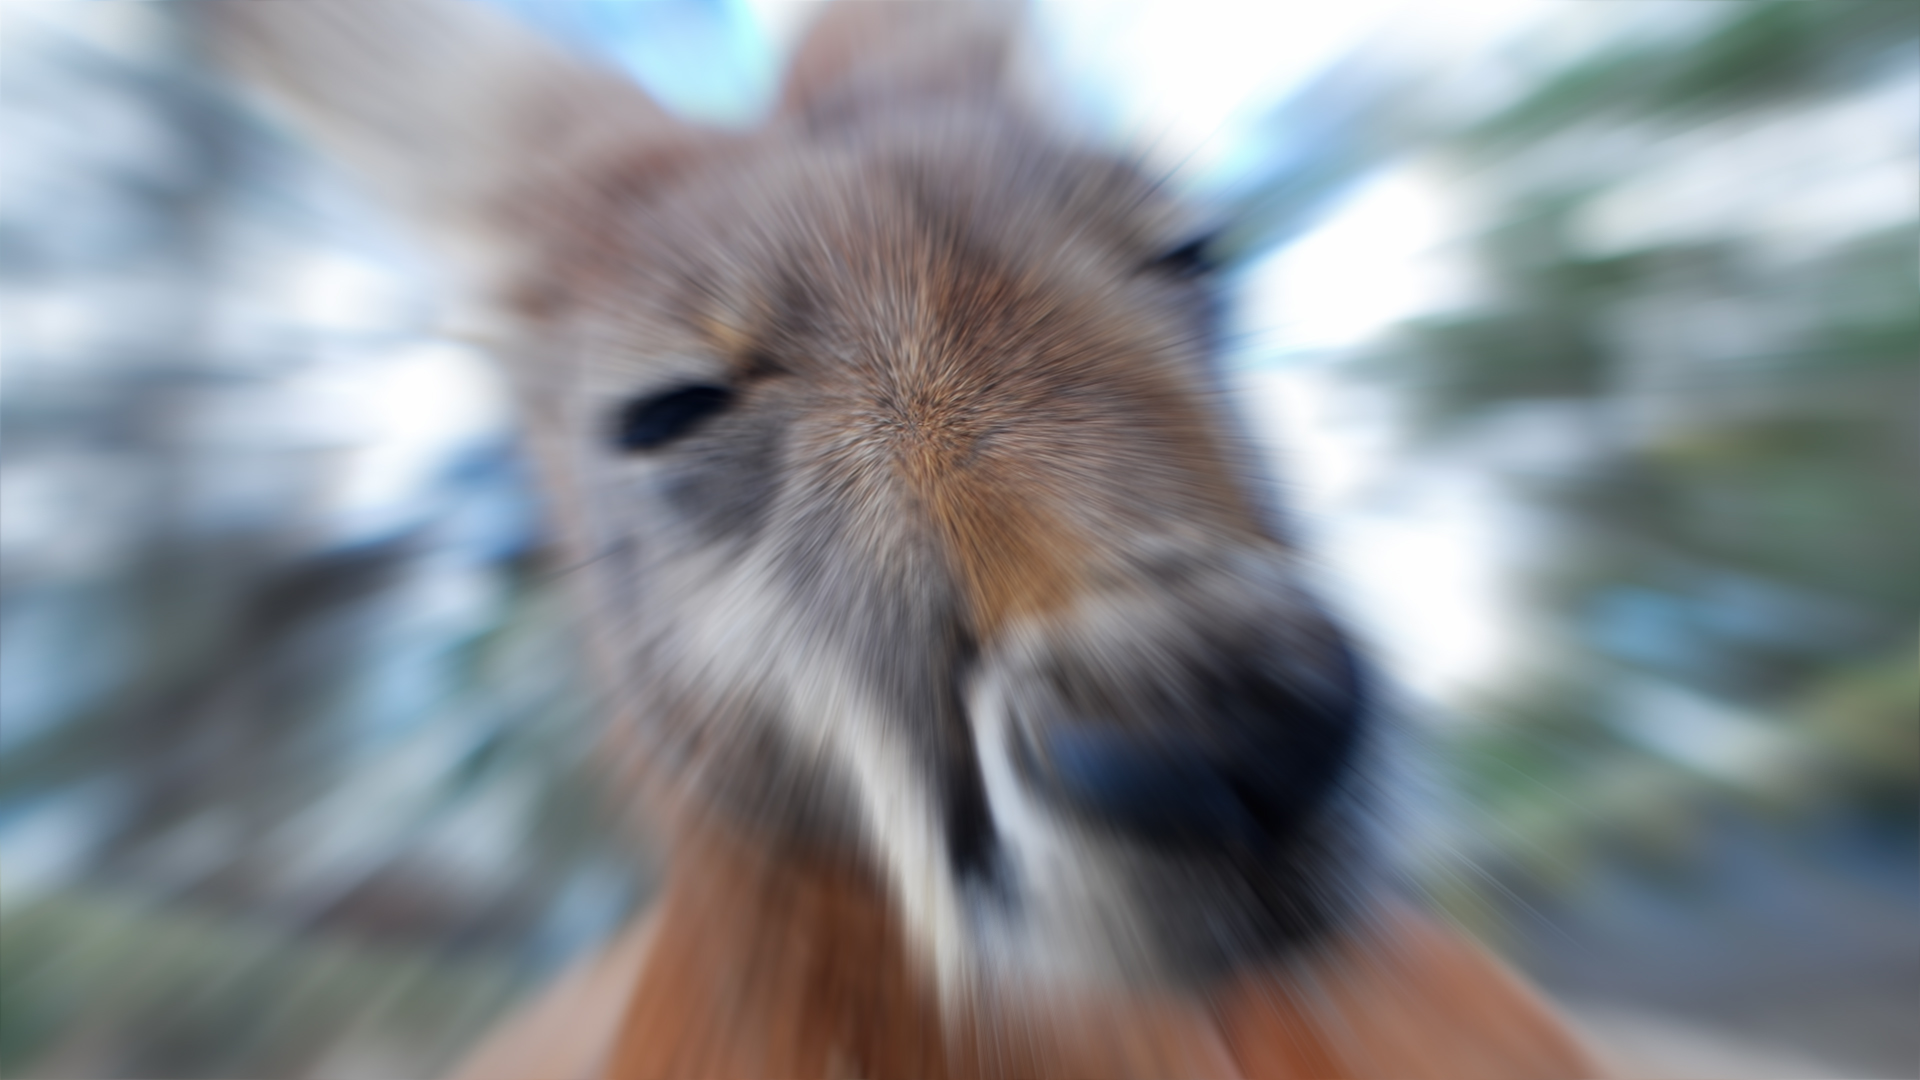 Blurred kangaroo face